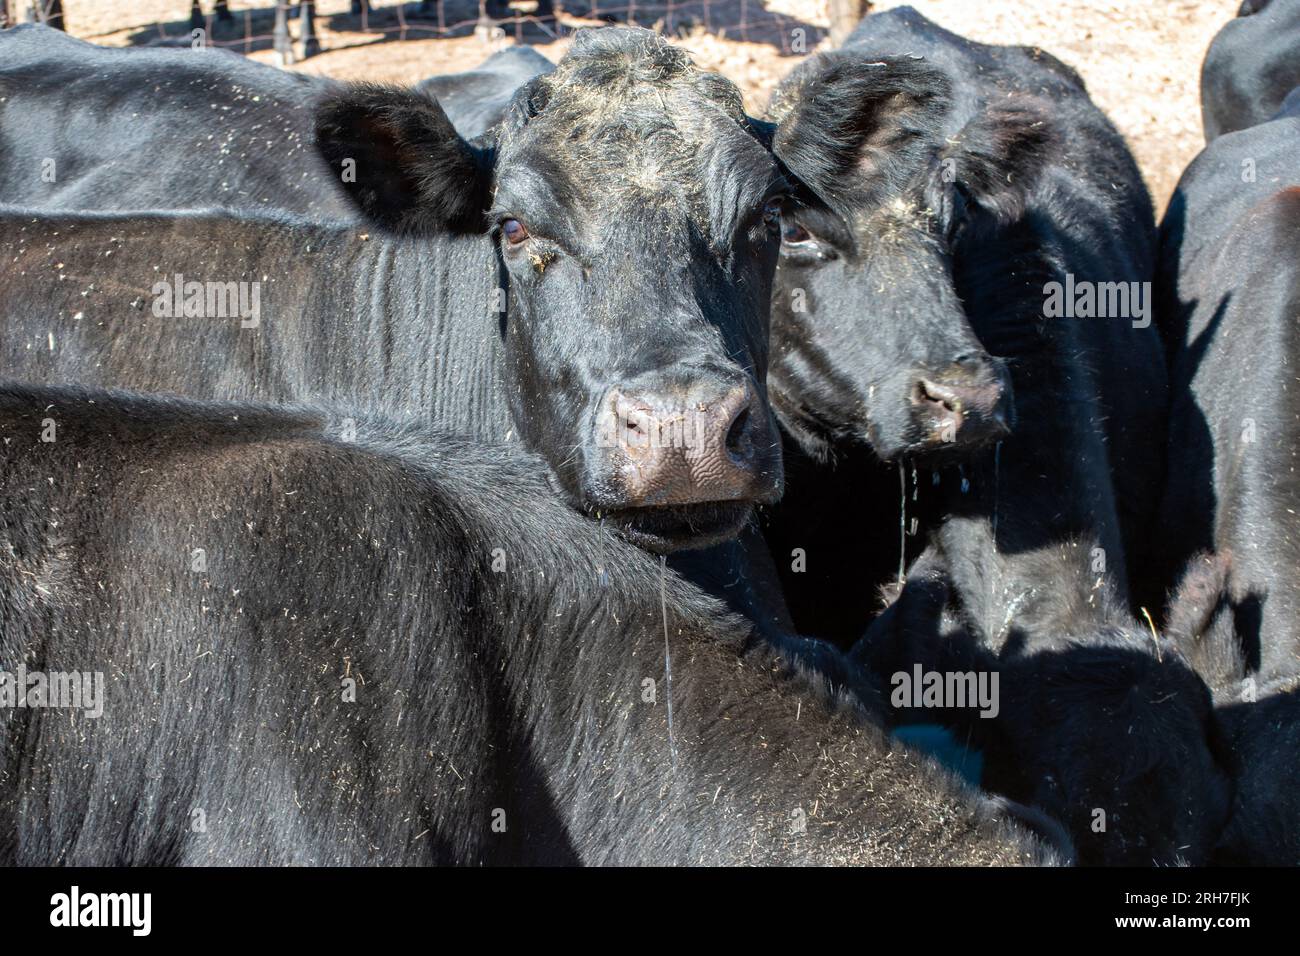 Ein detaillierter Blick aus nächster Nähe auf die Nasenlöcher einer schwarzen angus-Kuh, umgeben von mehr Rinderrindern. Stockfoto